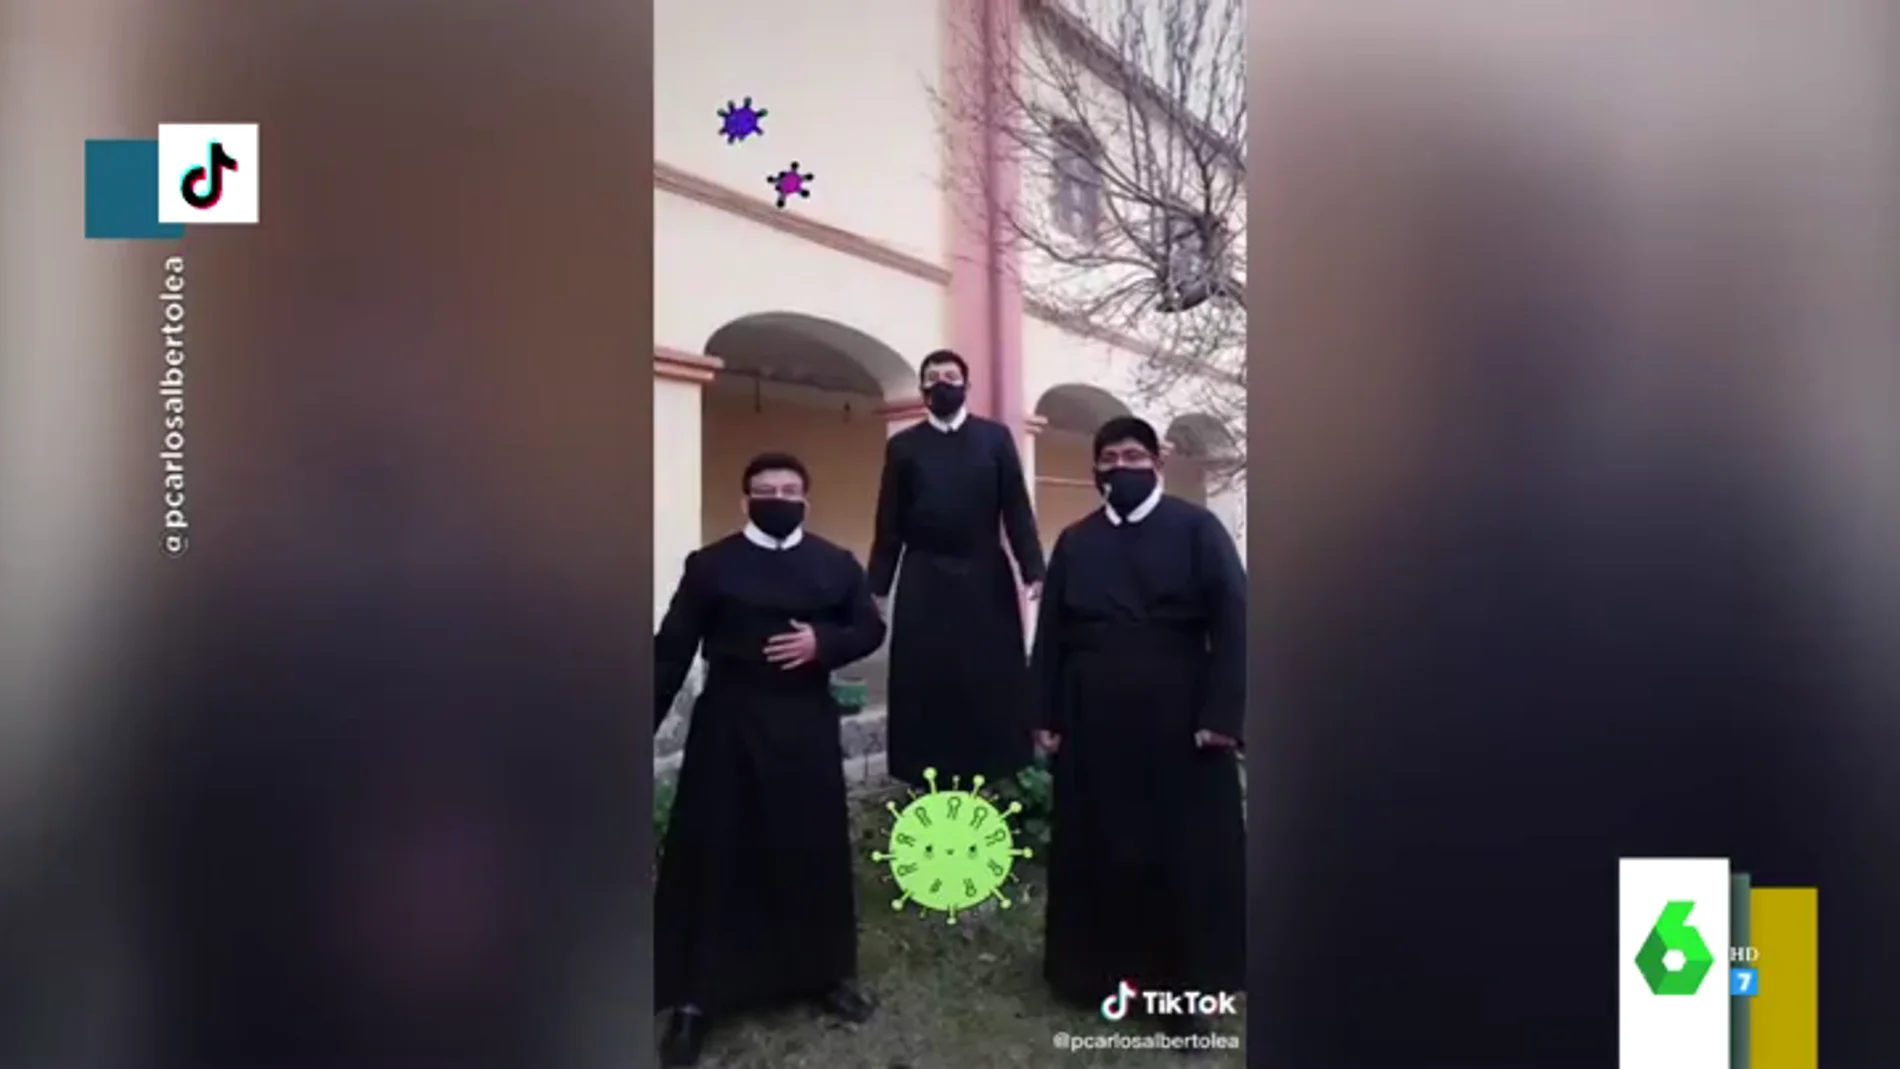 Un grupo de sacerdotes se hace viral en TikTok bailando al ritmo de "no nos podemos besar, las manos hay que lavar"